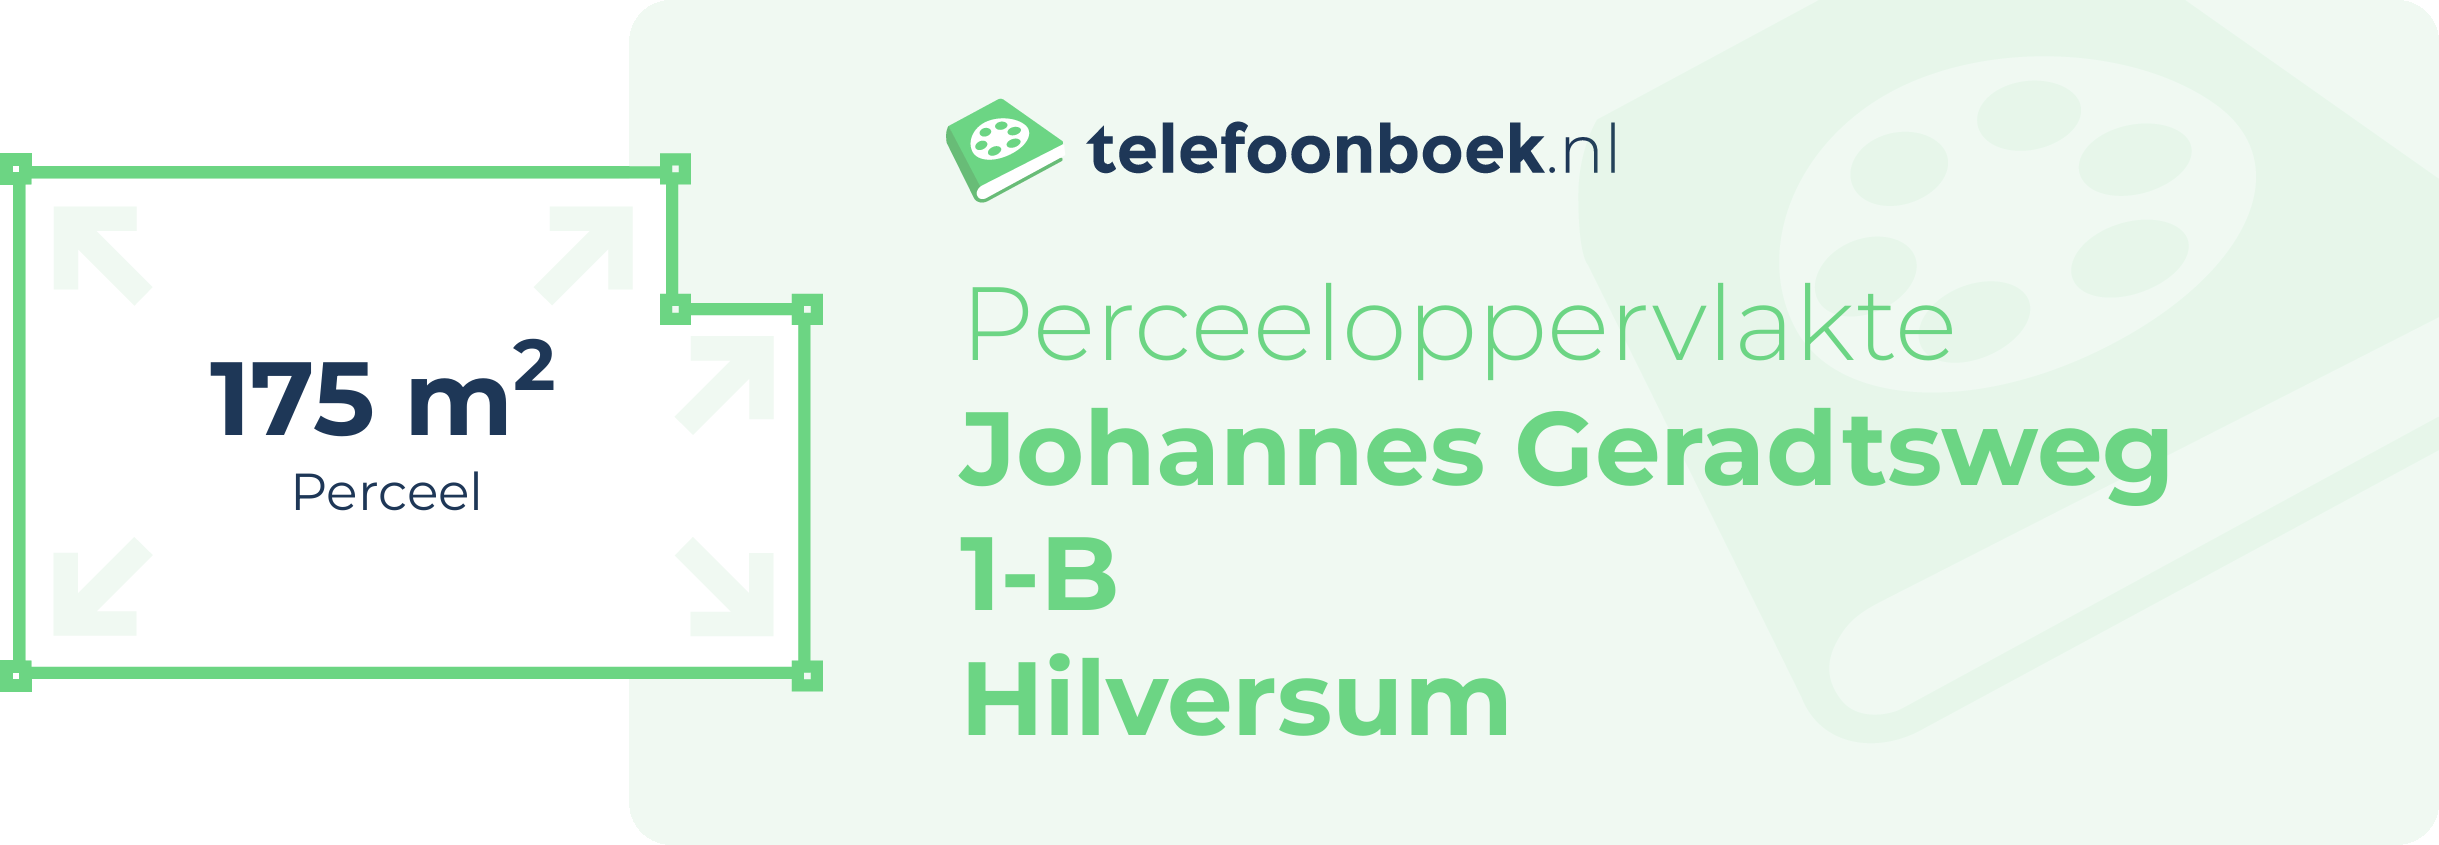 Perceeloppervlakte Johannes Geradtsweg 1-B Hilversum